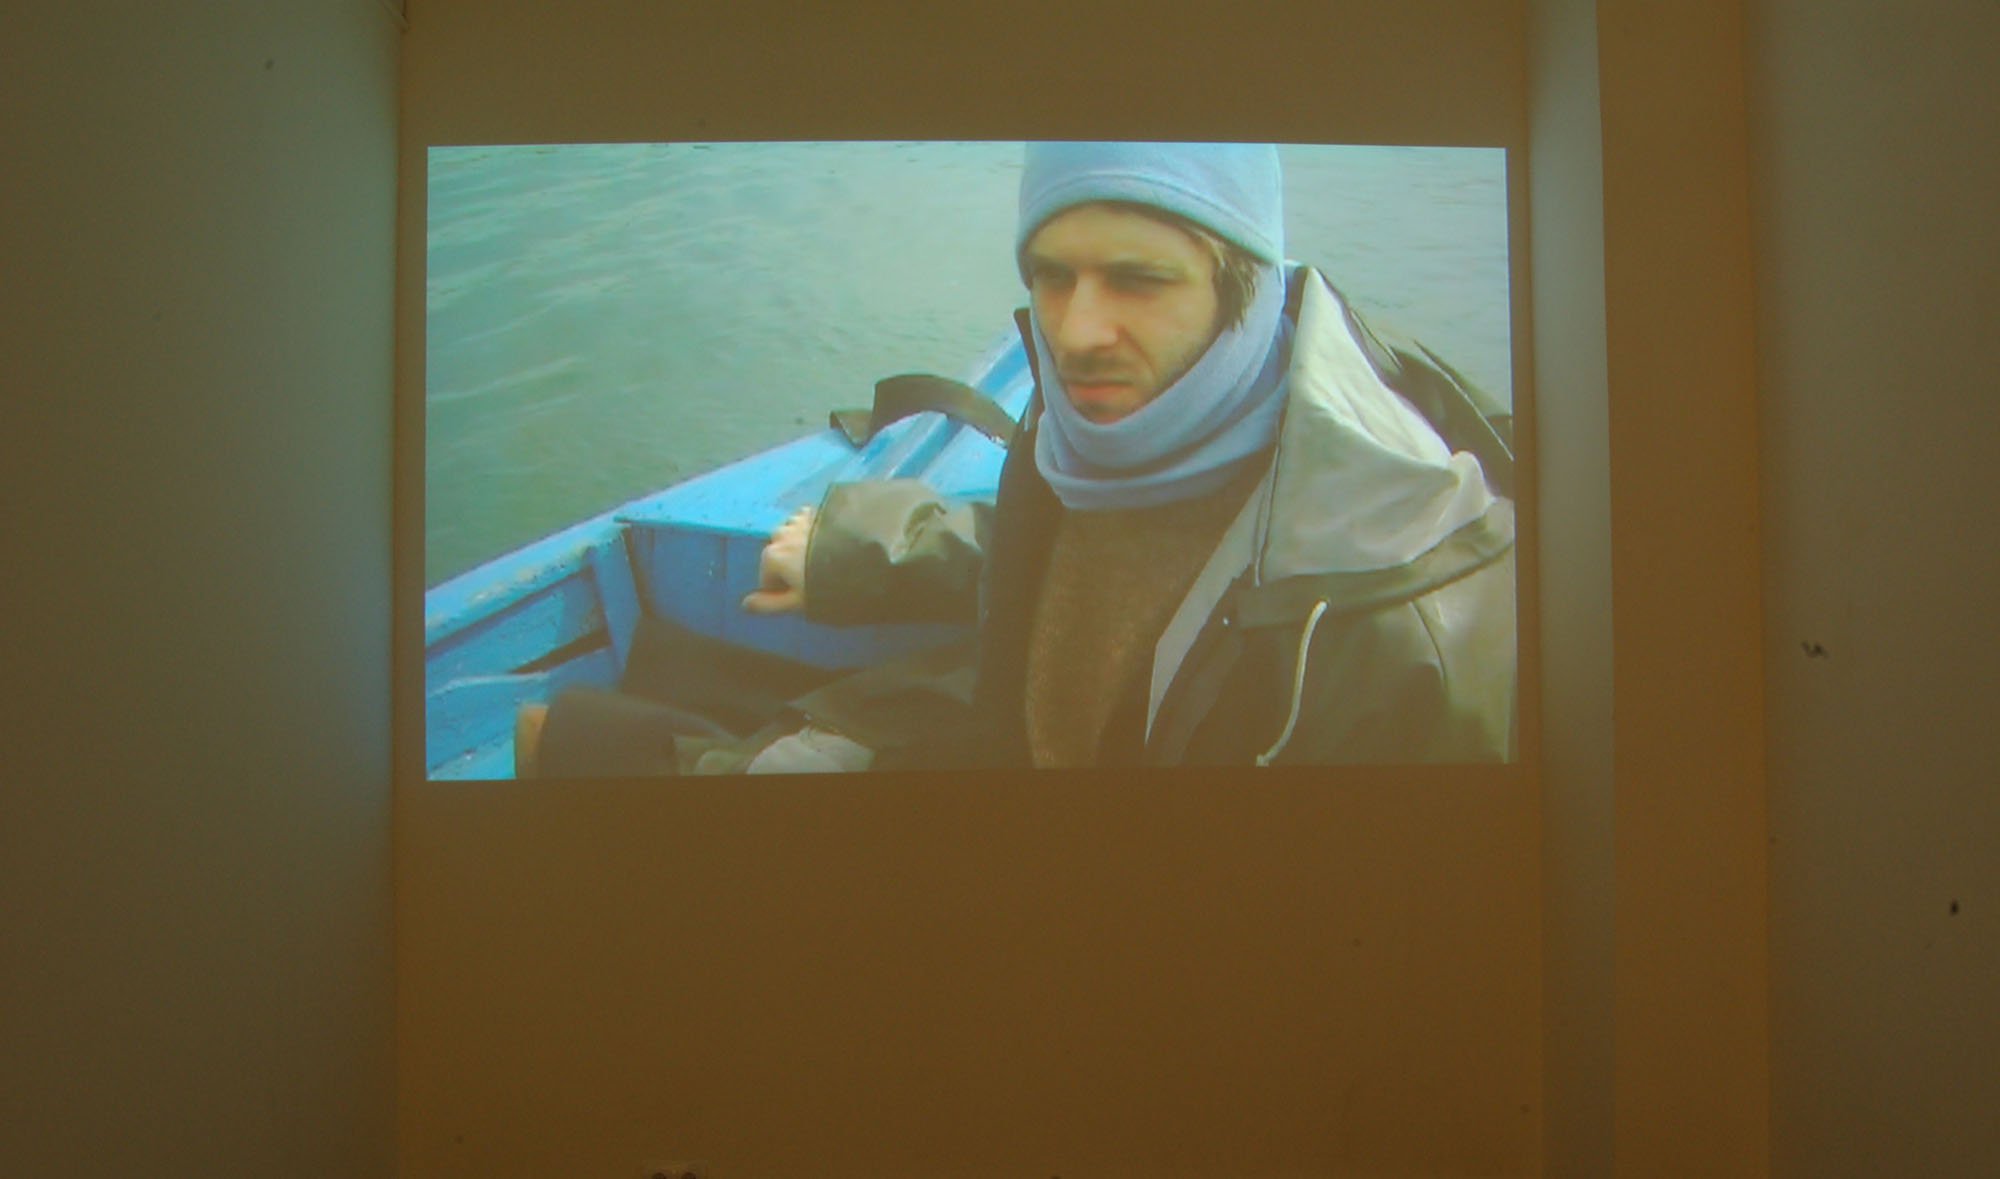 Emre Hüner, Boumont, single channel video projection, 14 min., 2006